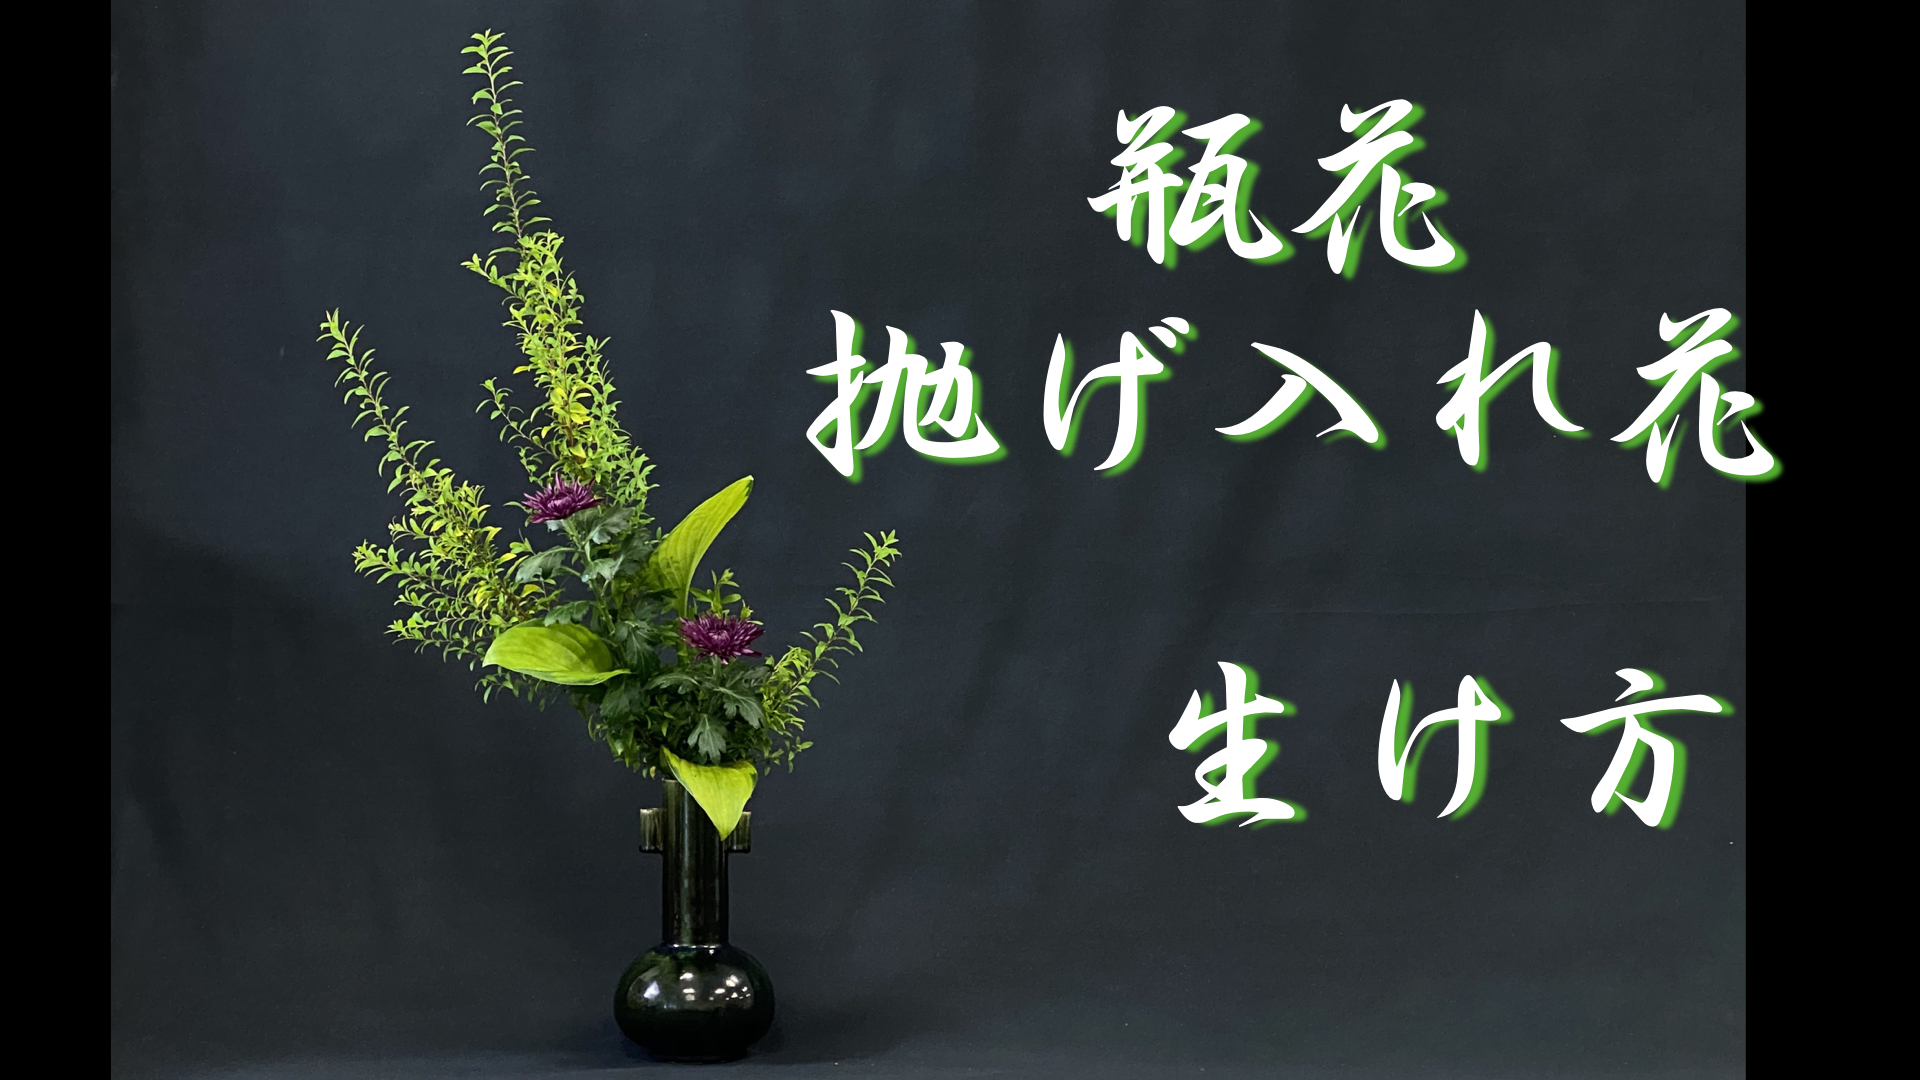 生け花 抛げ入れ花 の生け方を詳しく解説 何故 抛げ入れ と呼ばれるの Ikebana いけばな 古流かたばみ会